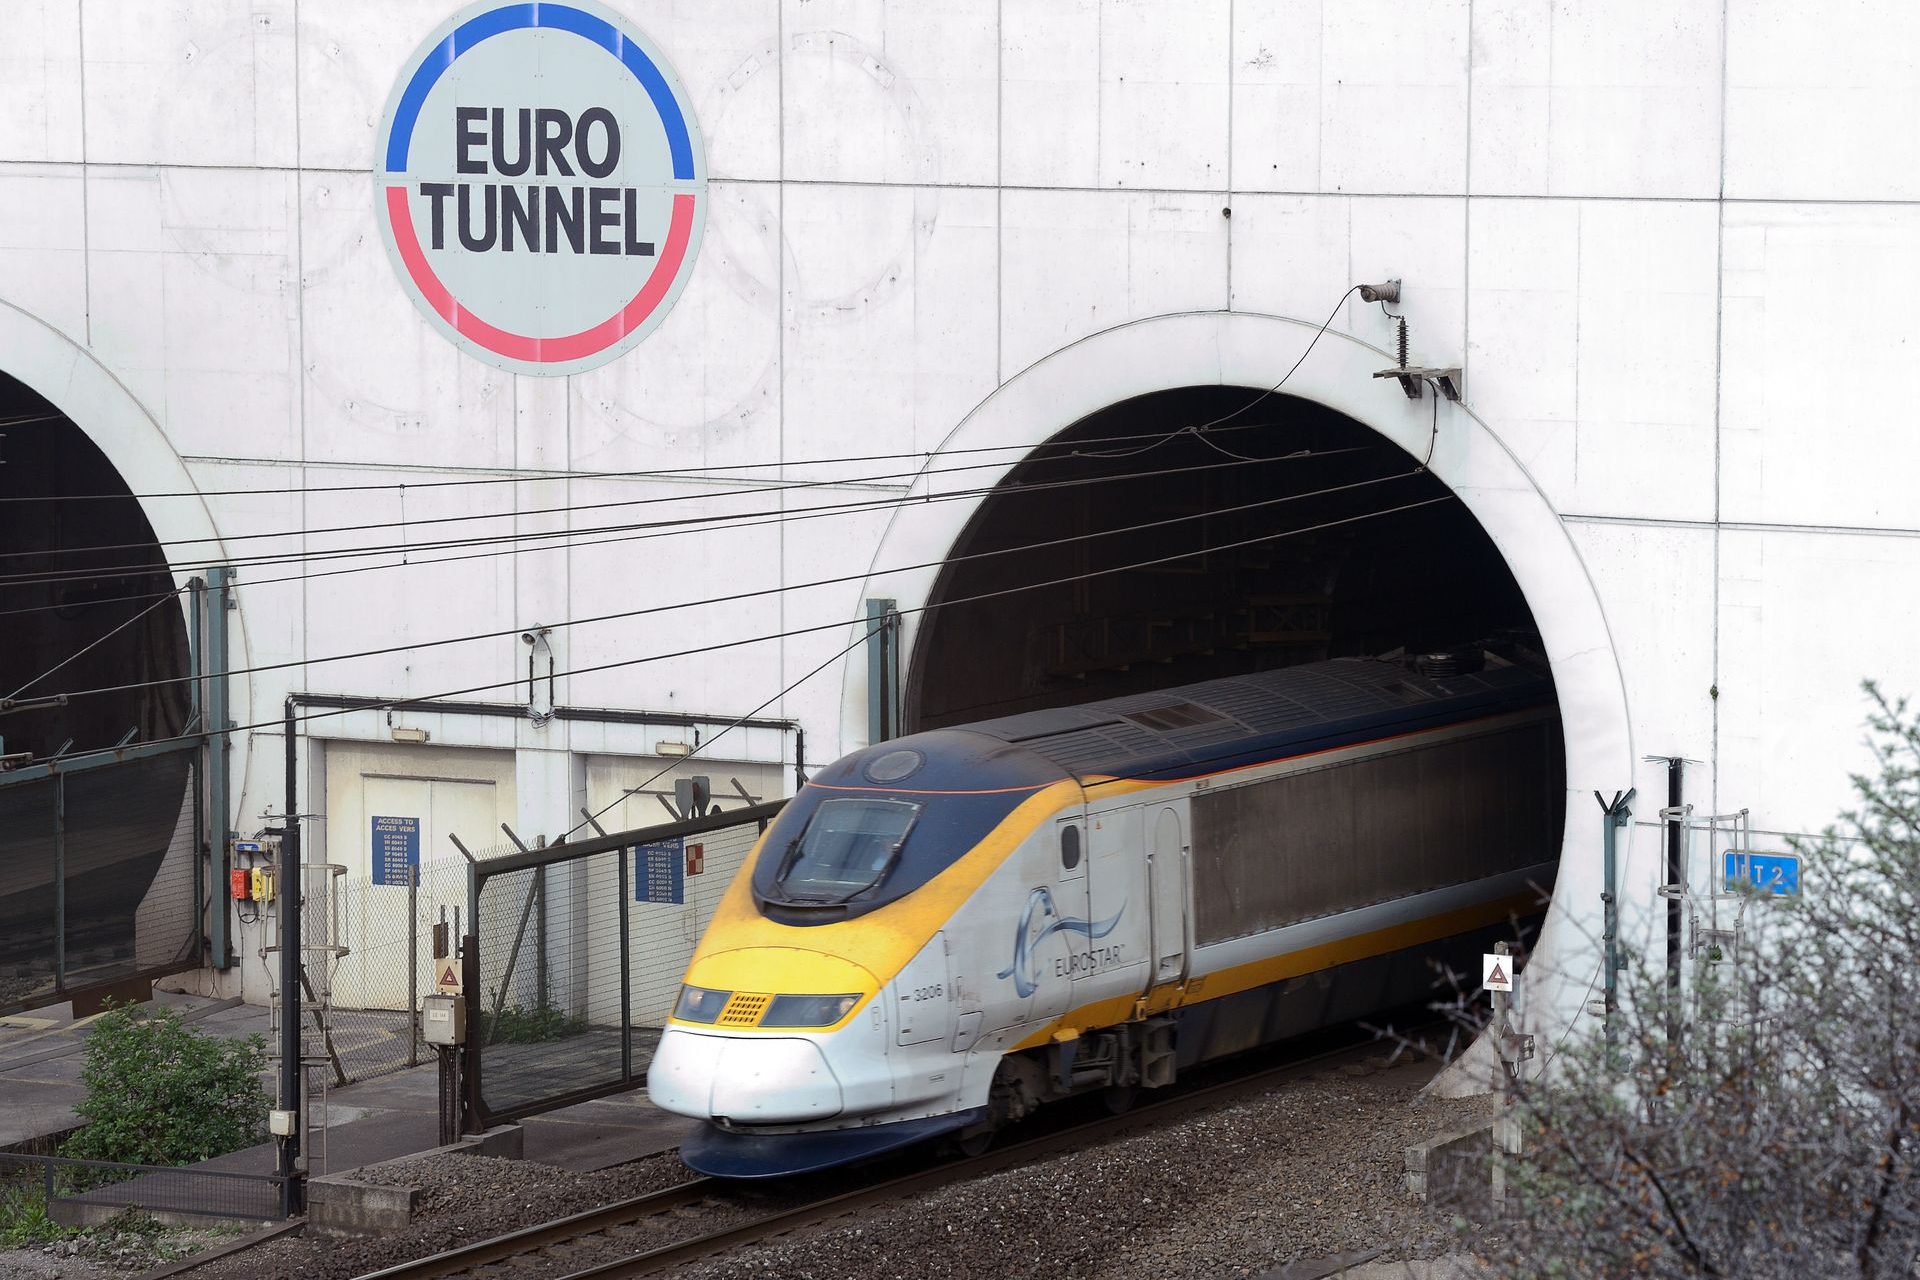 Eurostar affected